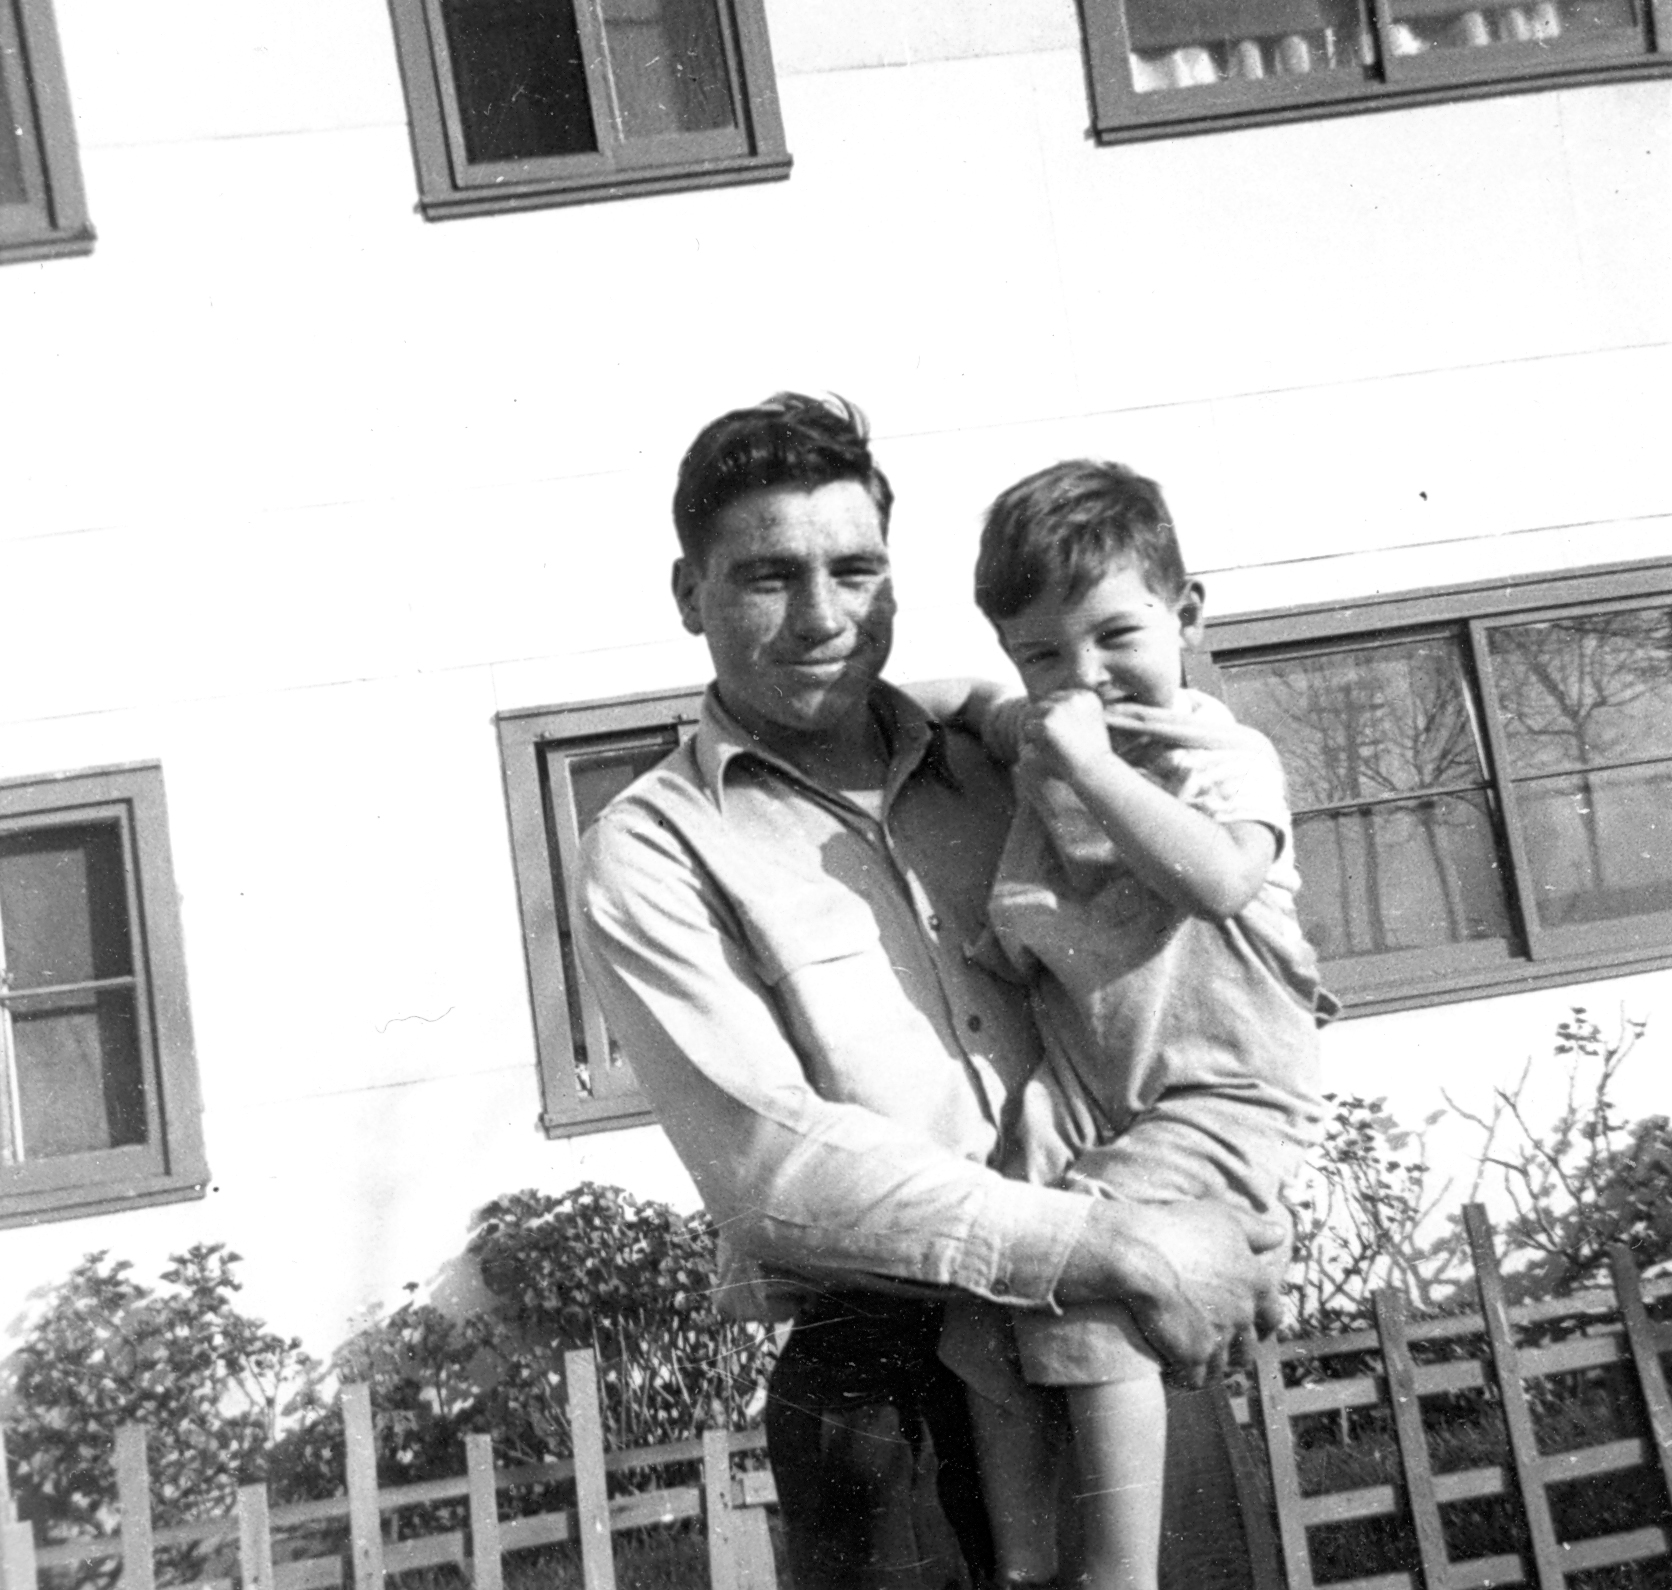 Pete holding his nephew Frank